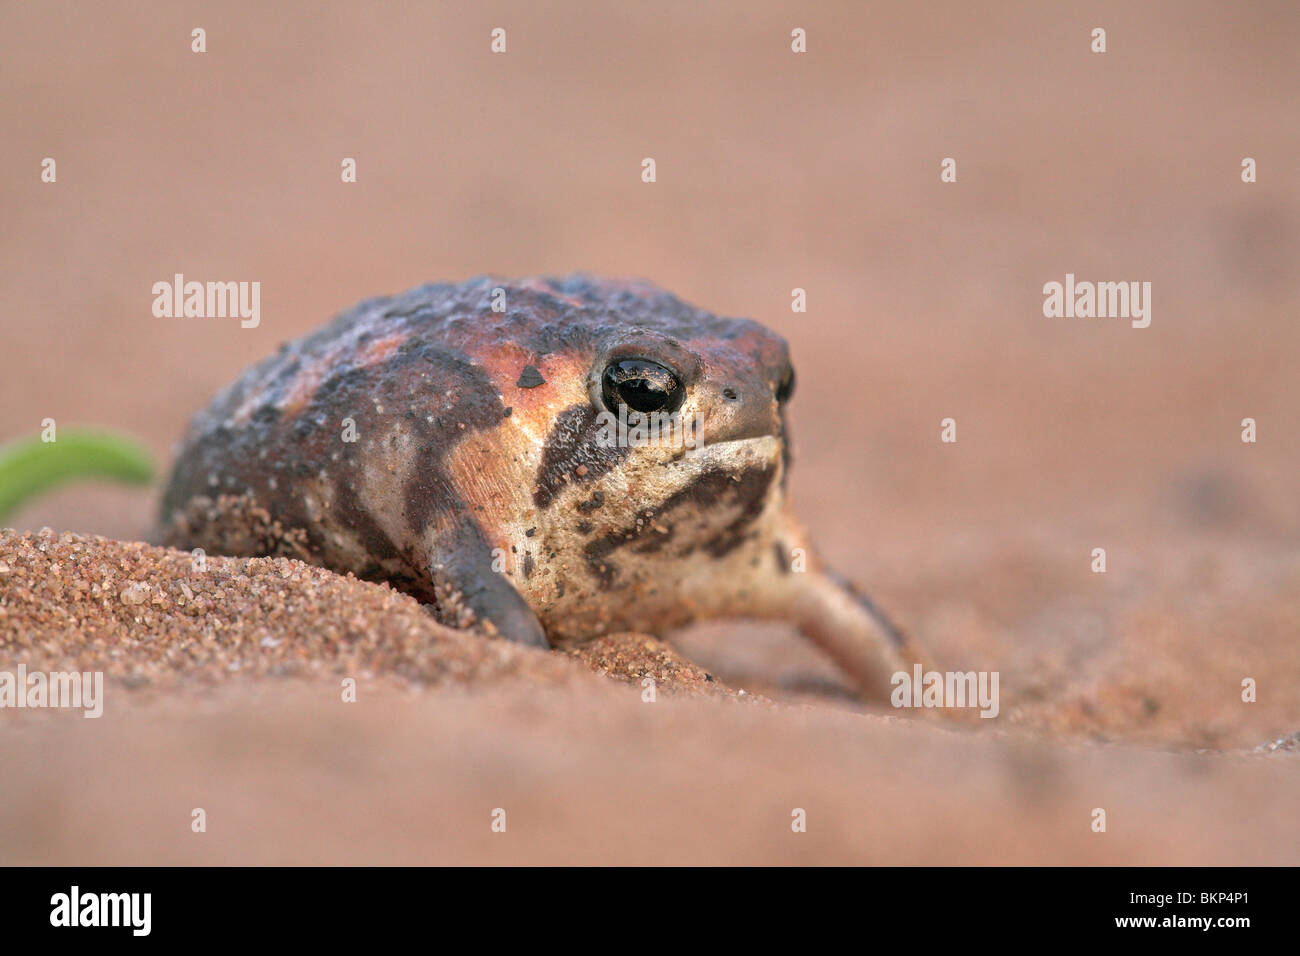 Foto von einem Bushveld-Rainfrog auf sand Stockfoto